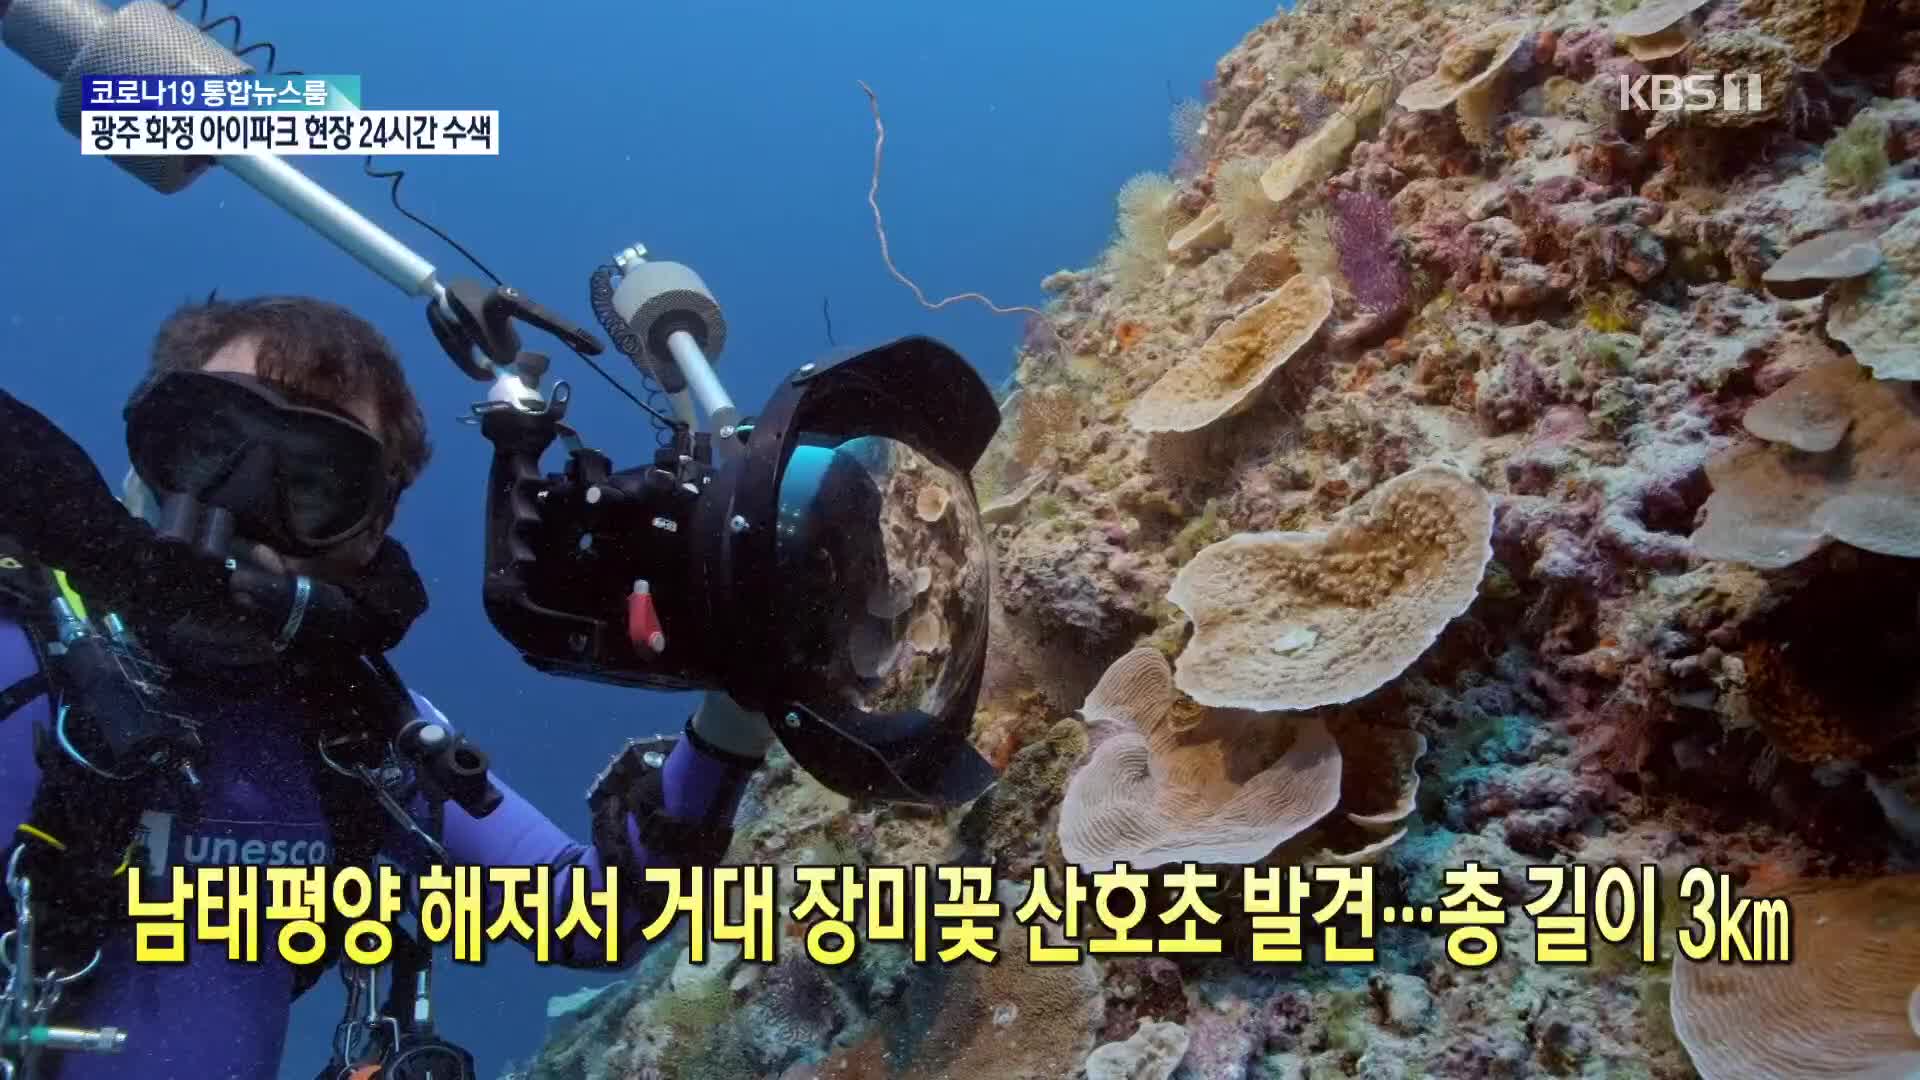 [톡톡 지구촌] 남태평양 해저서 거대 장미꽃 산호초 발견…총 길이 3㎞